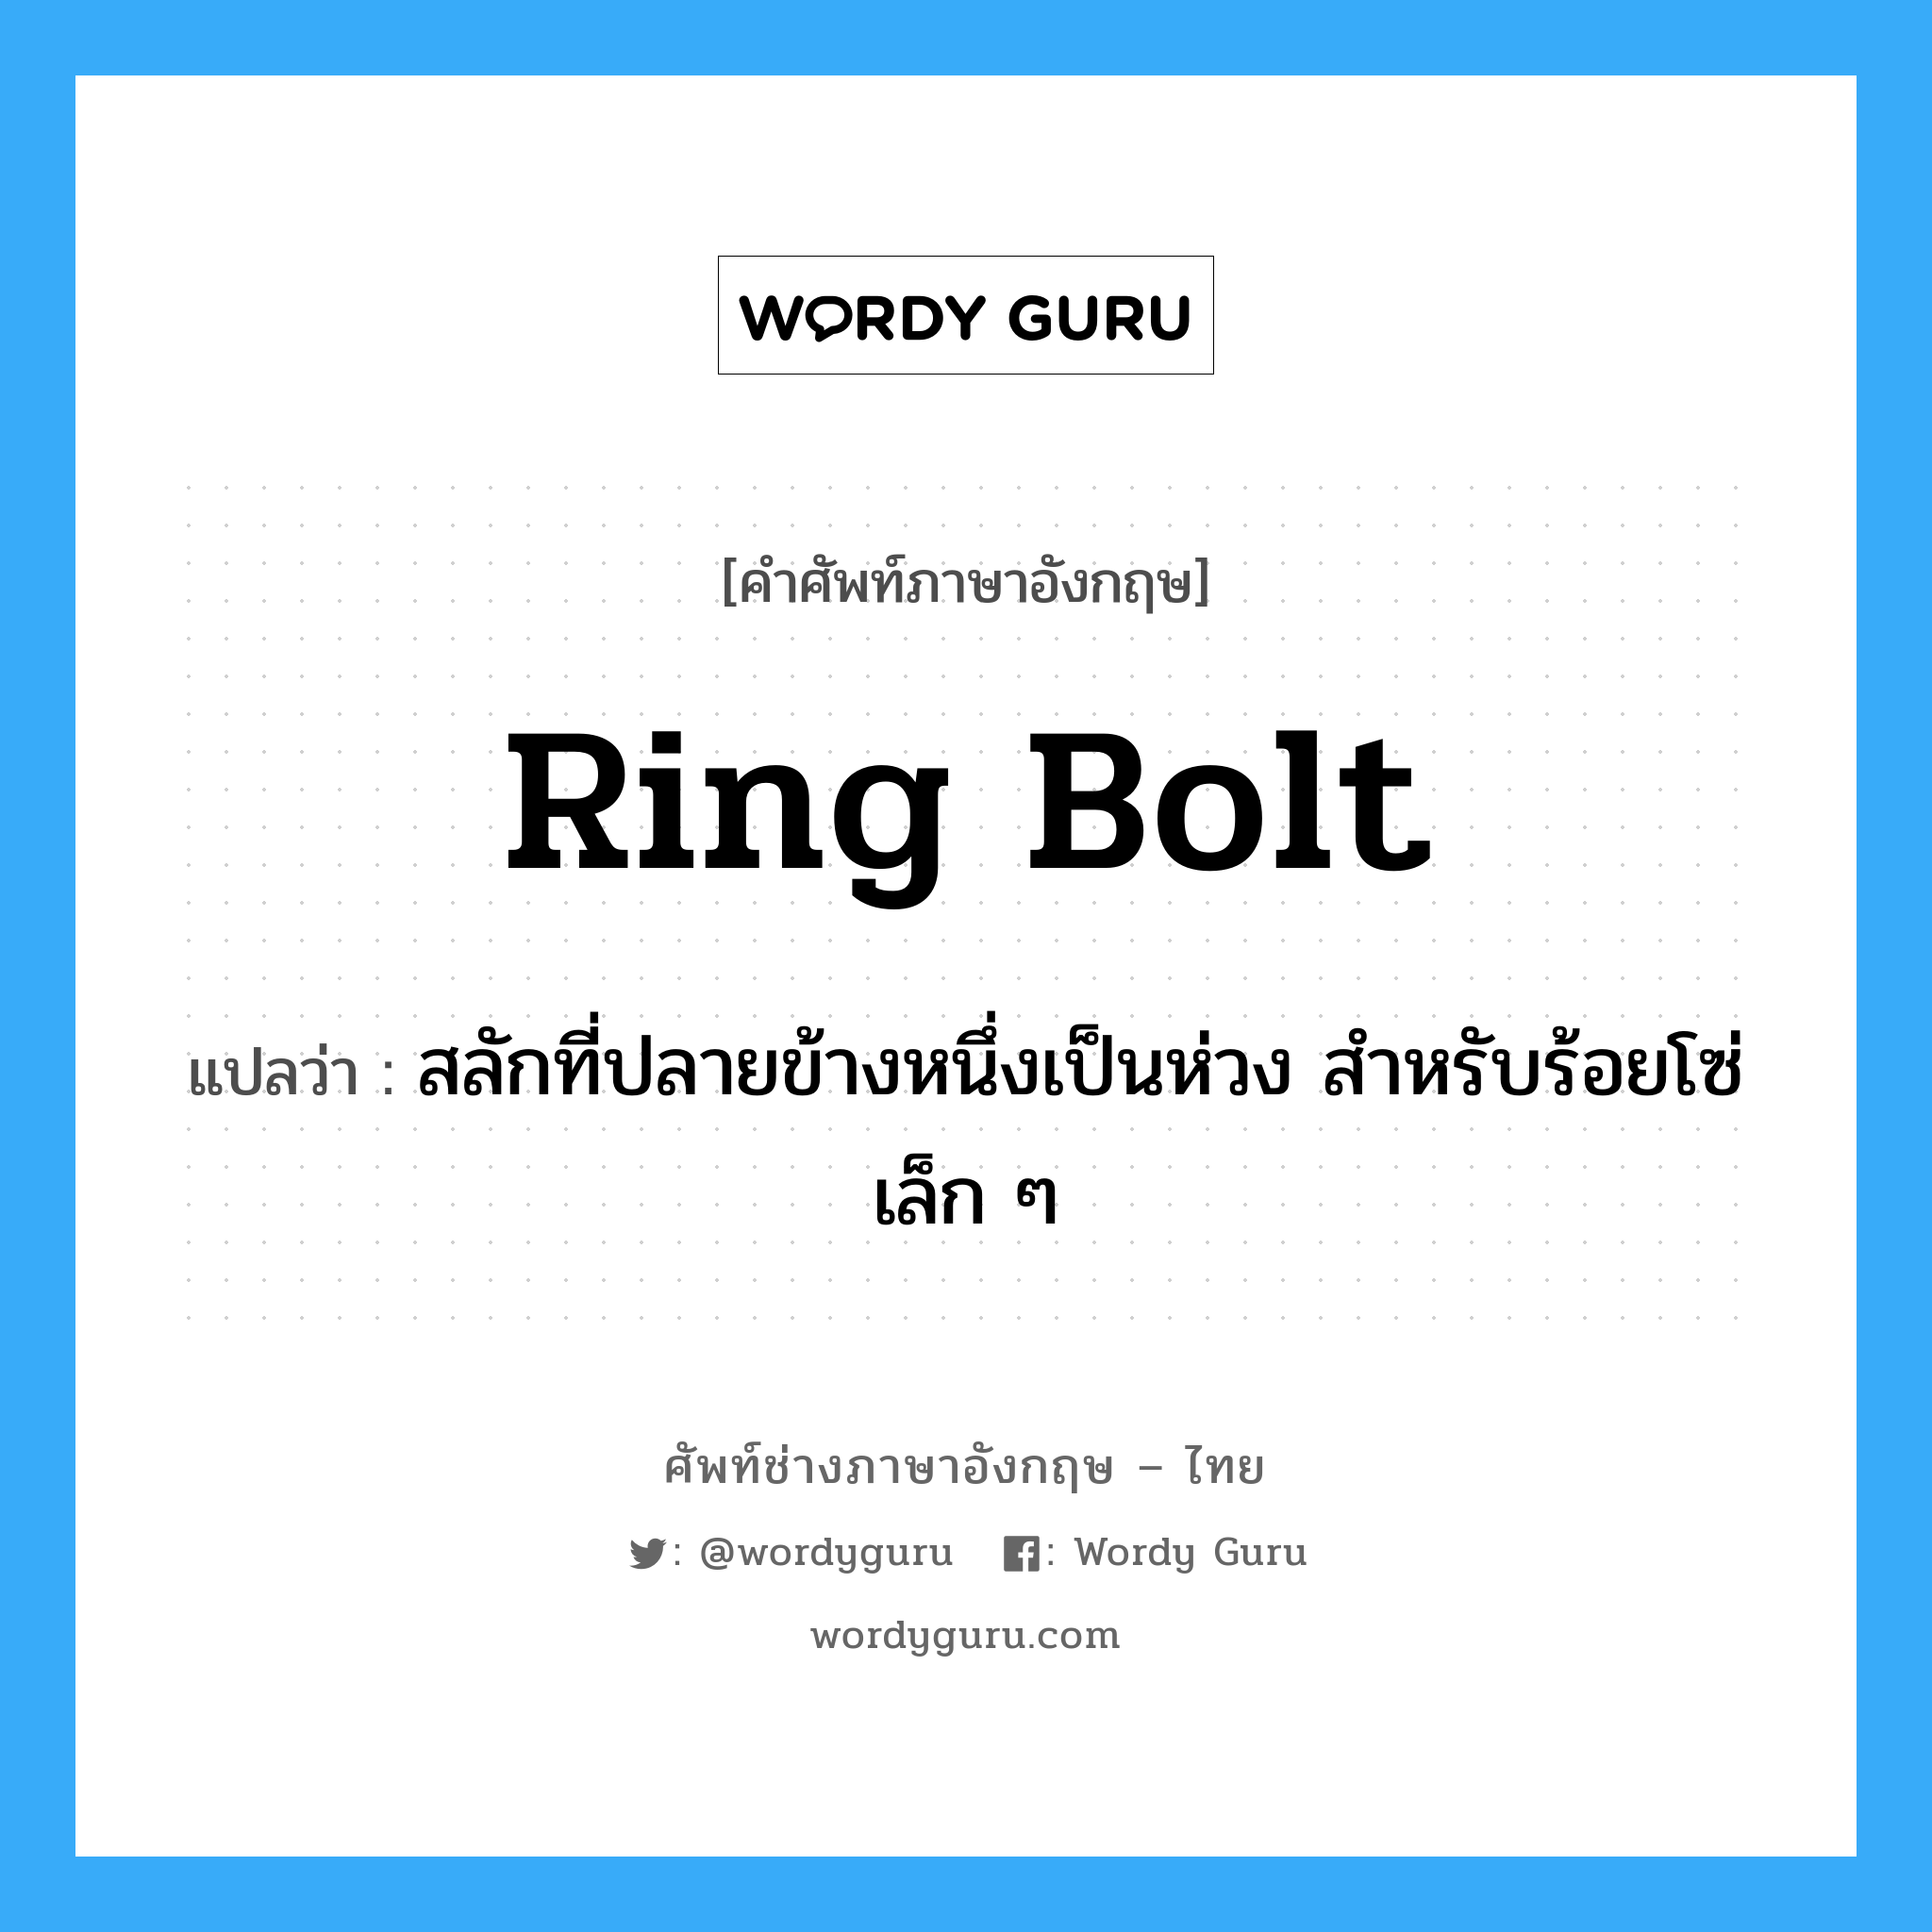 ring-bolt แปลว่า?, คำศัพท์ช่างภาษาอังกฤษ - ไทย ring bolt คำศัพท์ภาษาอังกฤษ ring bolt แปลว่า สลักที่ปลายข้างหนึ่งเป็นห่วง สำหรับร้อยโซ่เล็ก ๆ